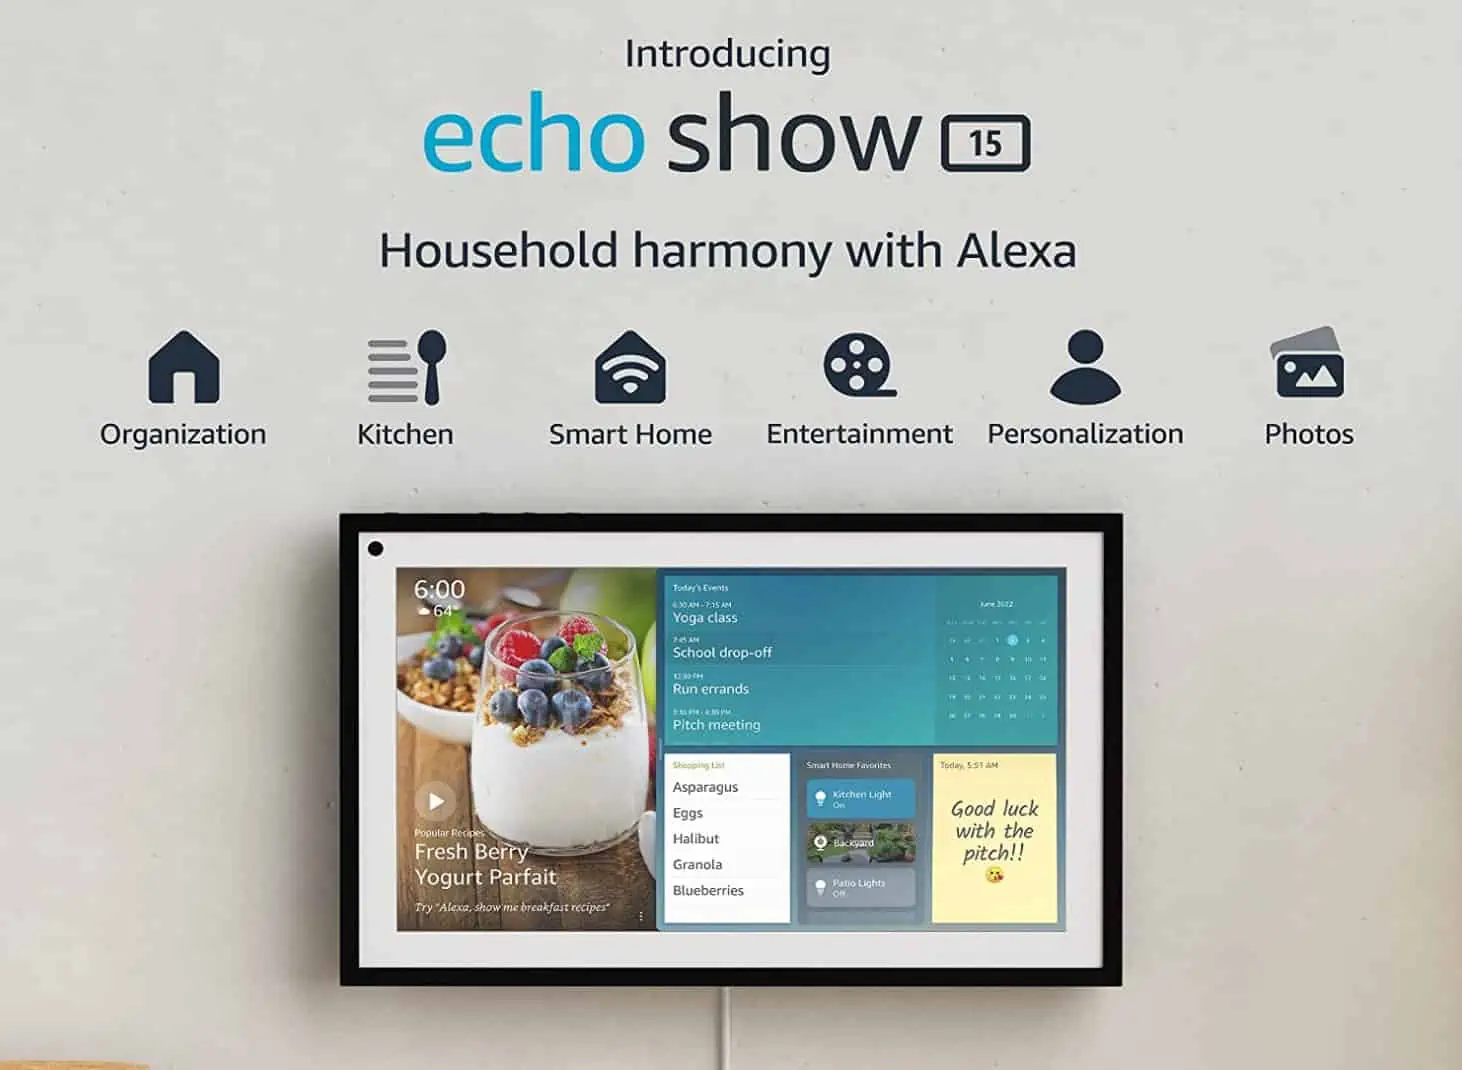 Amazon anuncia Echo Show 15, uma tela inteligente de 15 polegadas com tecnologia Alexa